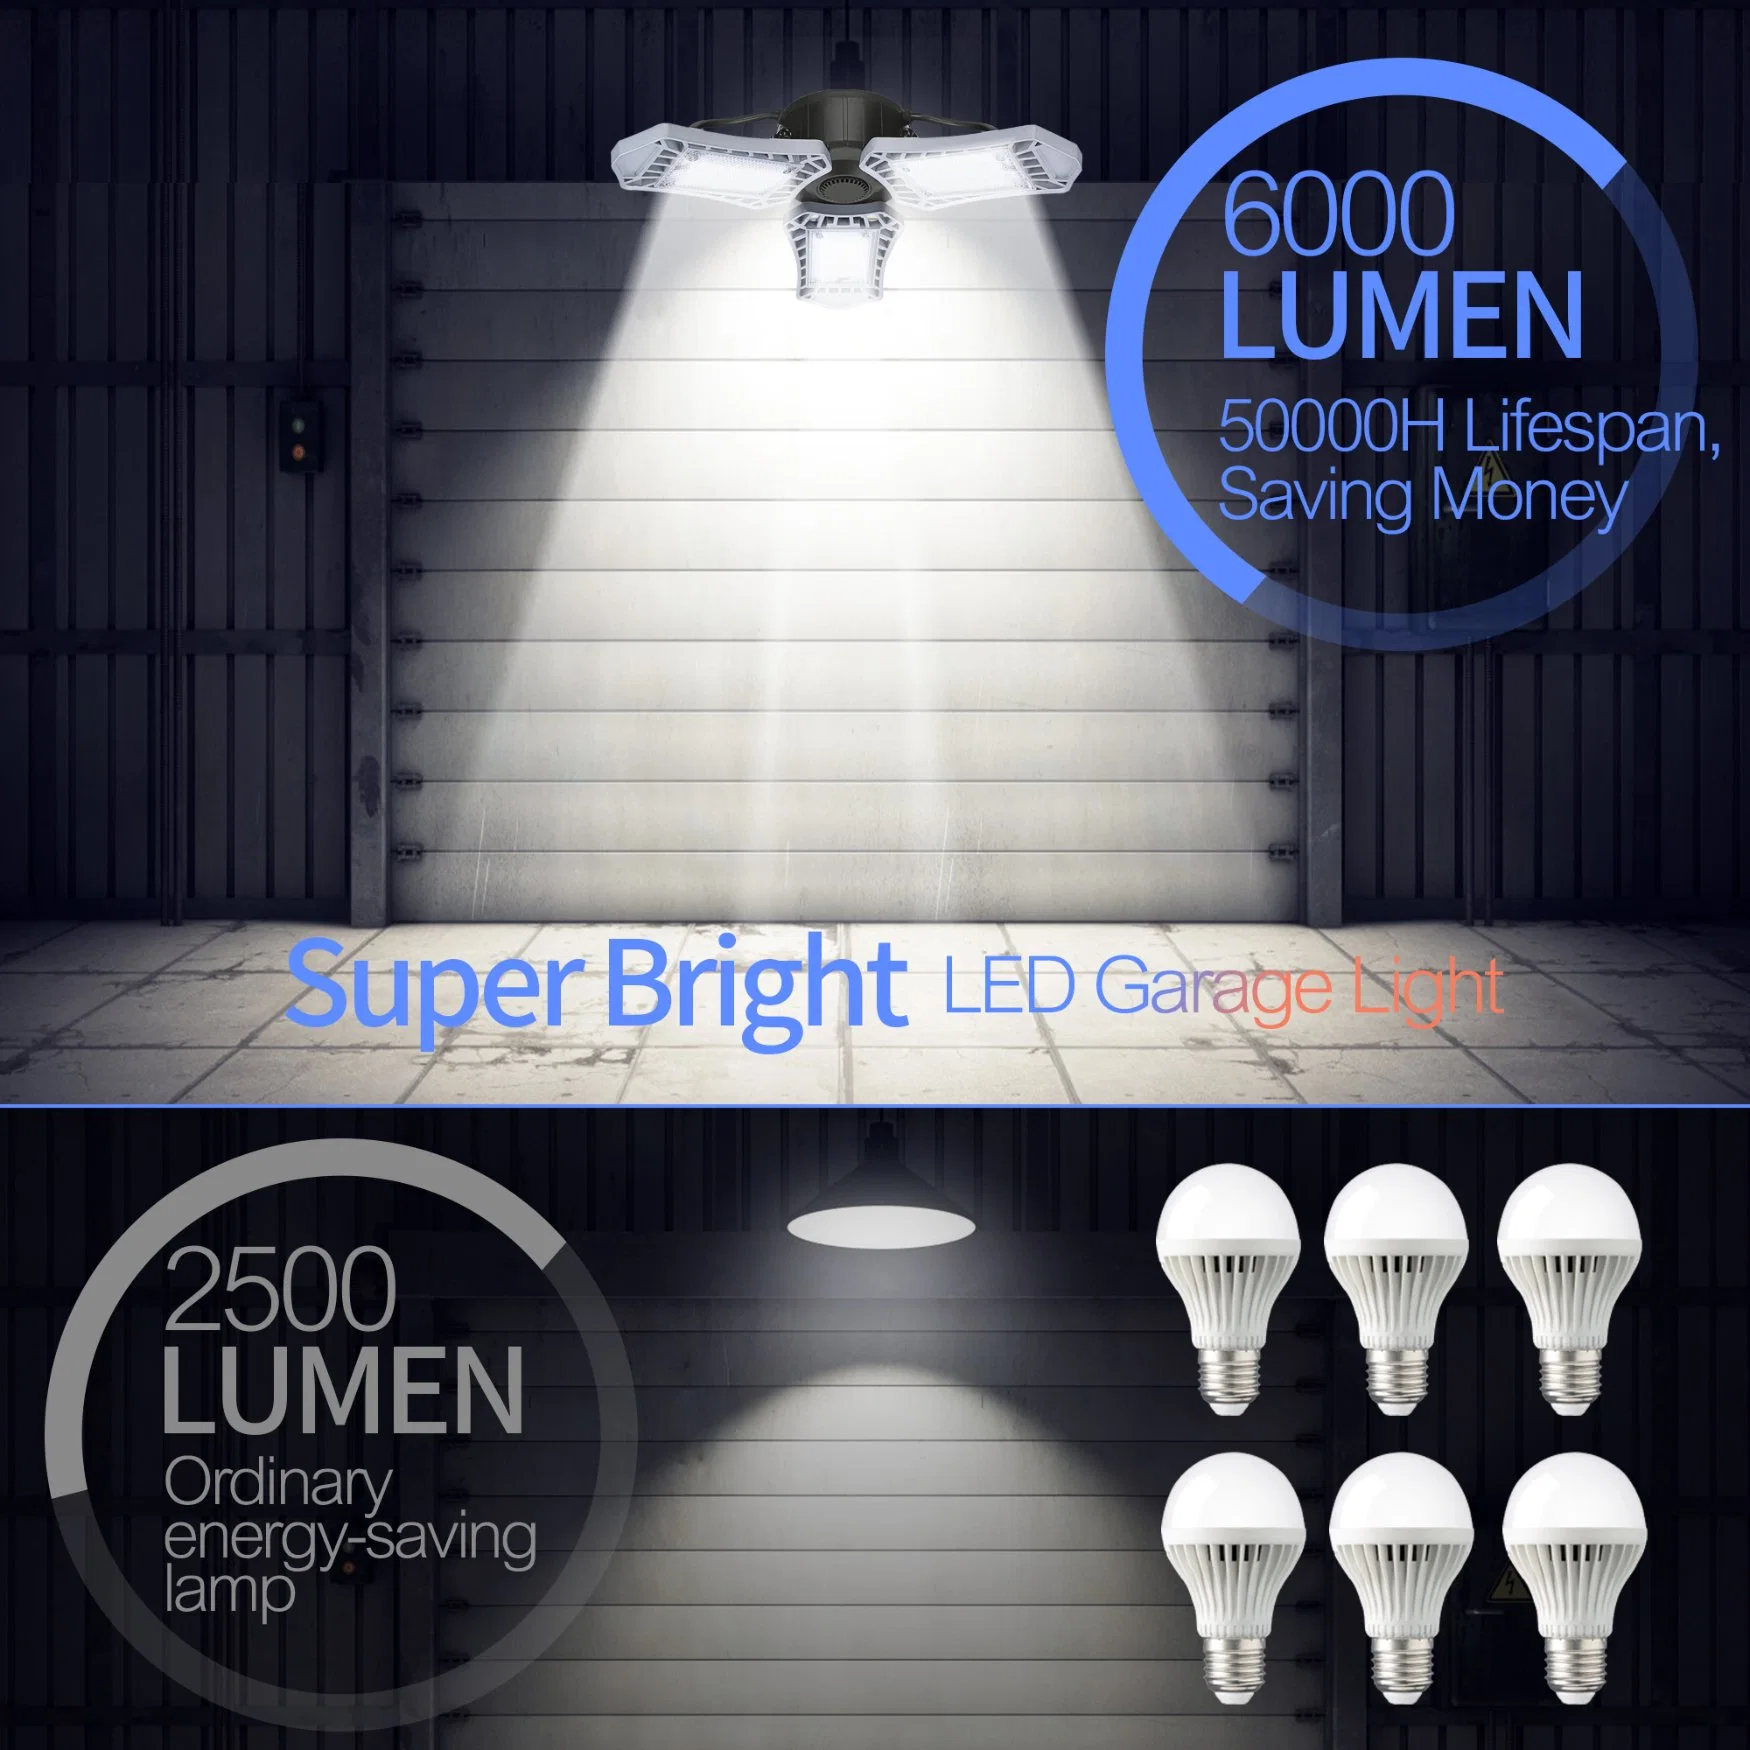 LED Without Inductive Garage Lamp, 60W Ceiling Workshop Lamp, with 3 Super Bright Adjustable Panels, 6000lm Deformable LED Garage Basement Warehouse Workshop La